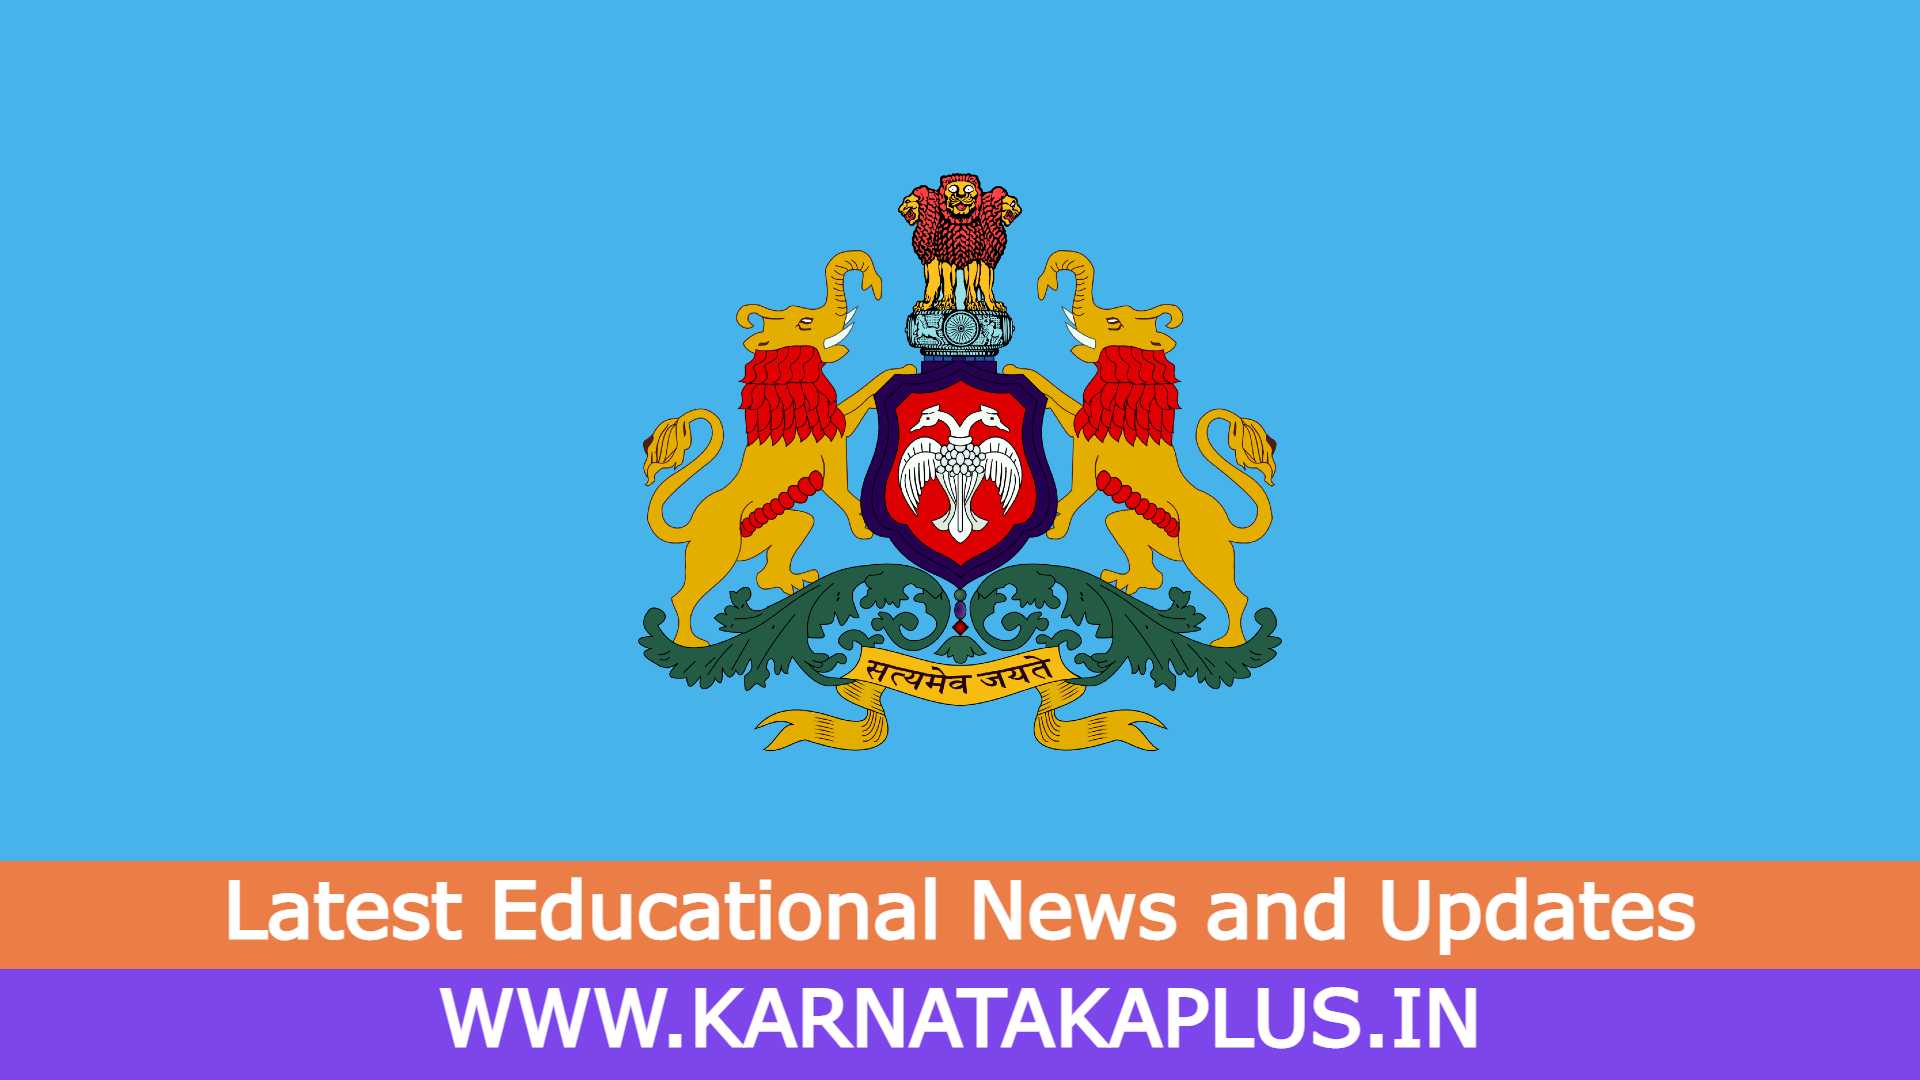 Karnataka Plus Fire Station Officer Written Exam Call Letter Uploaded